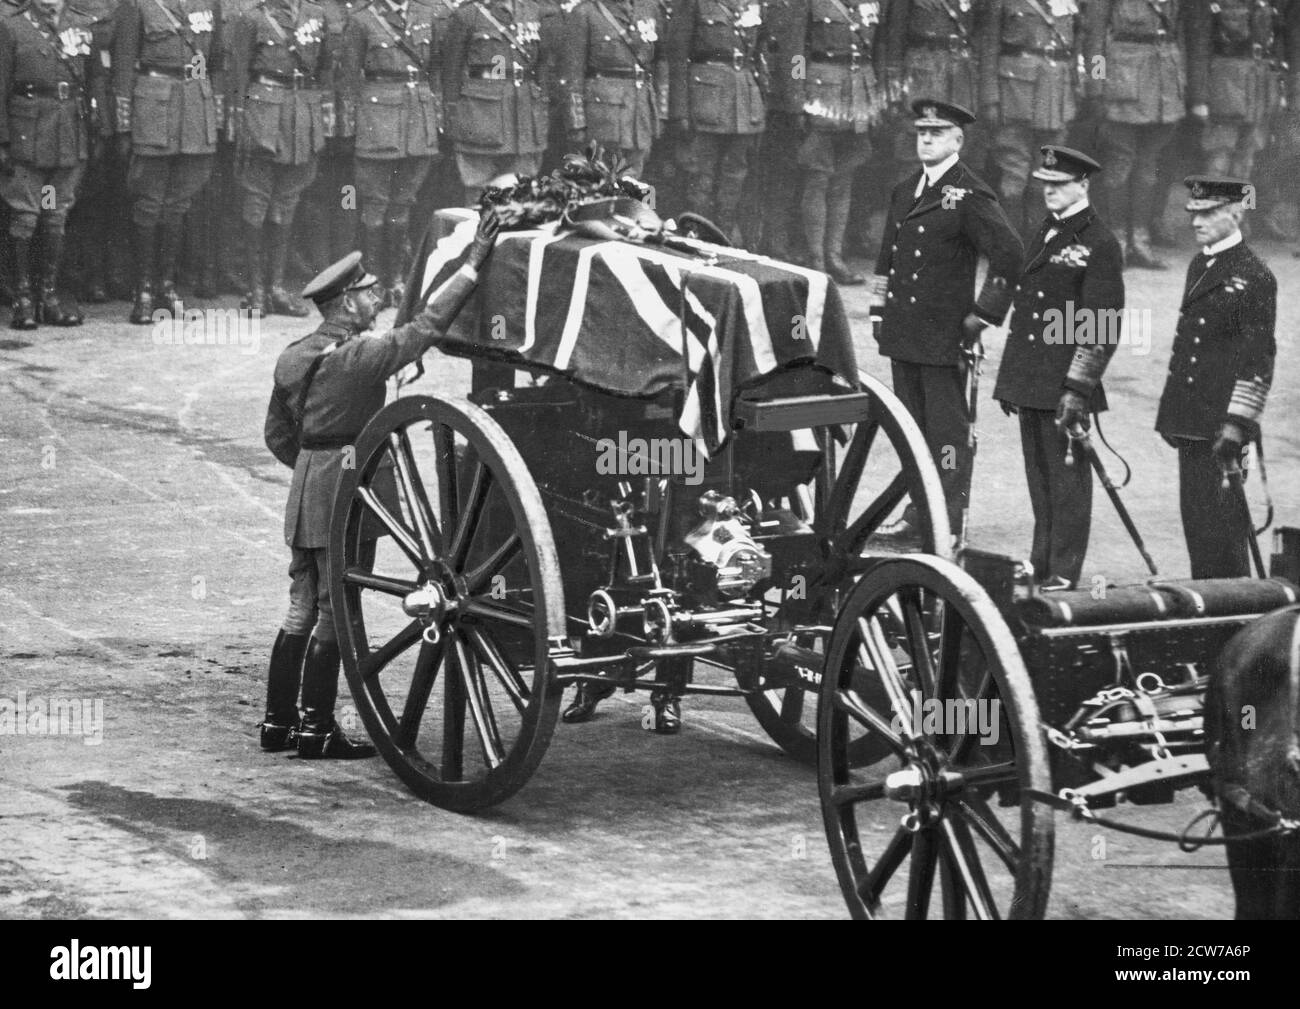 LONDRA - NOVEMBRE 11: Re George V mette una corona sulla bara del Guerriero Ignoto a Whitehall, Londra, prima del suo internamento a Westminster Abbey, il 11 novembre 1920. Foto Stock